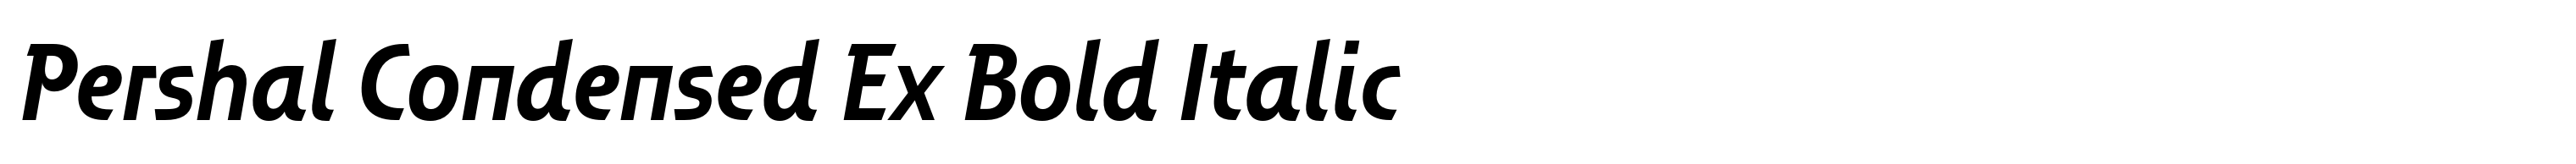 Pershal Condensed Ex Bold Italic